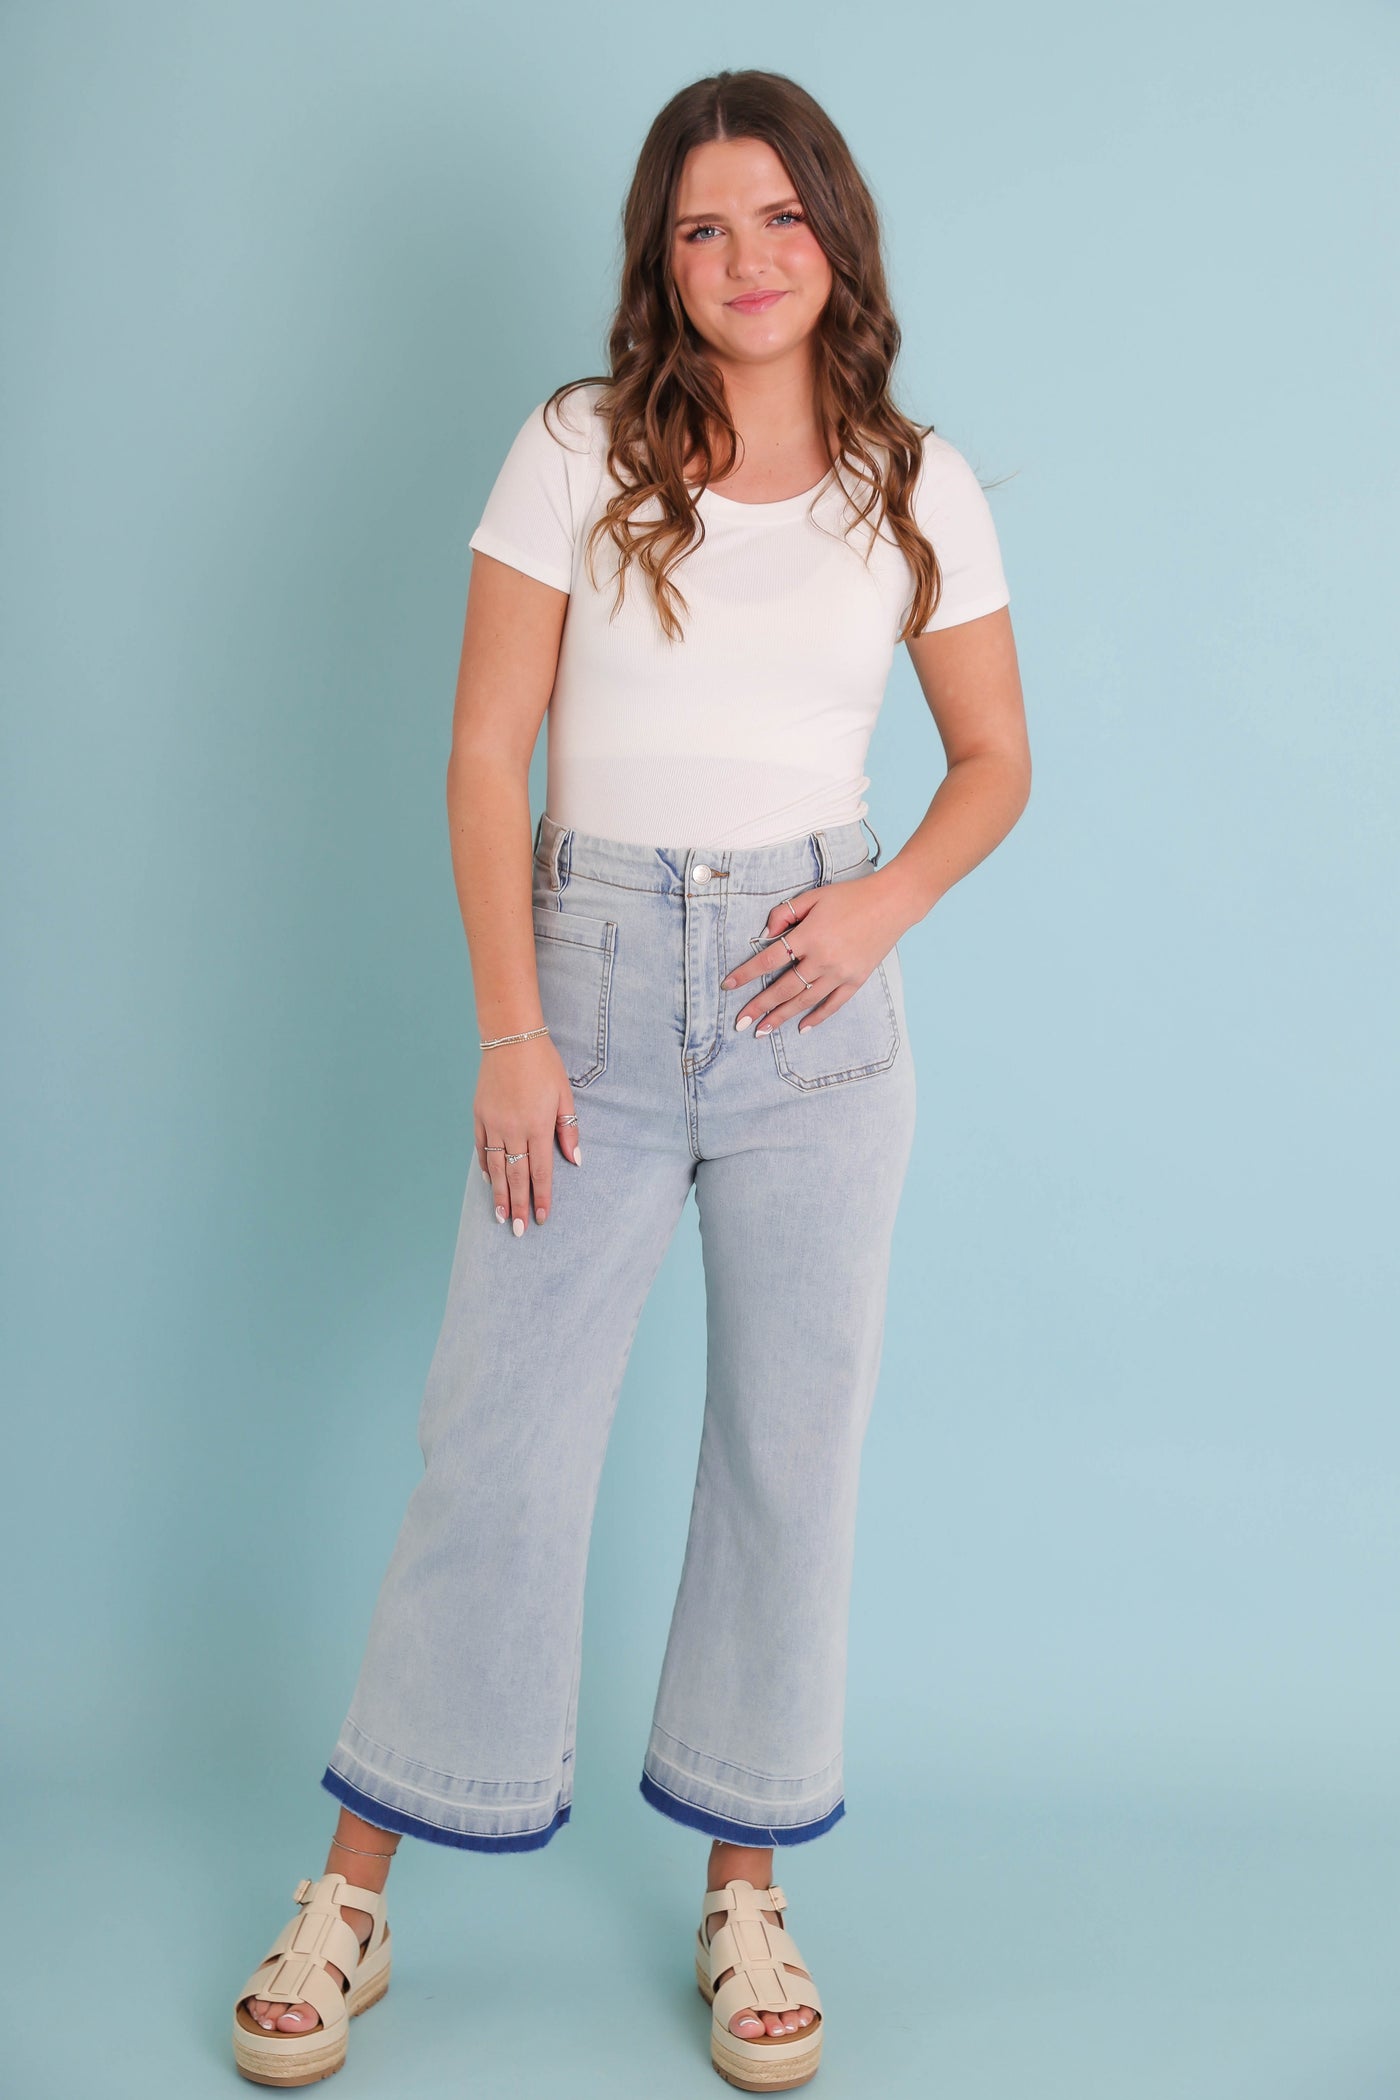 Wide Leg Light Wash Denim- Women's Raw Hem Jeans- Trendy Style Jeans